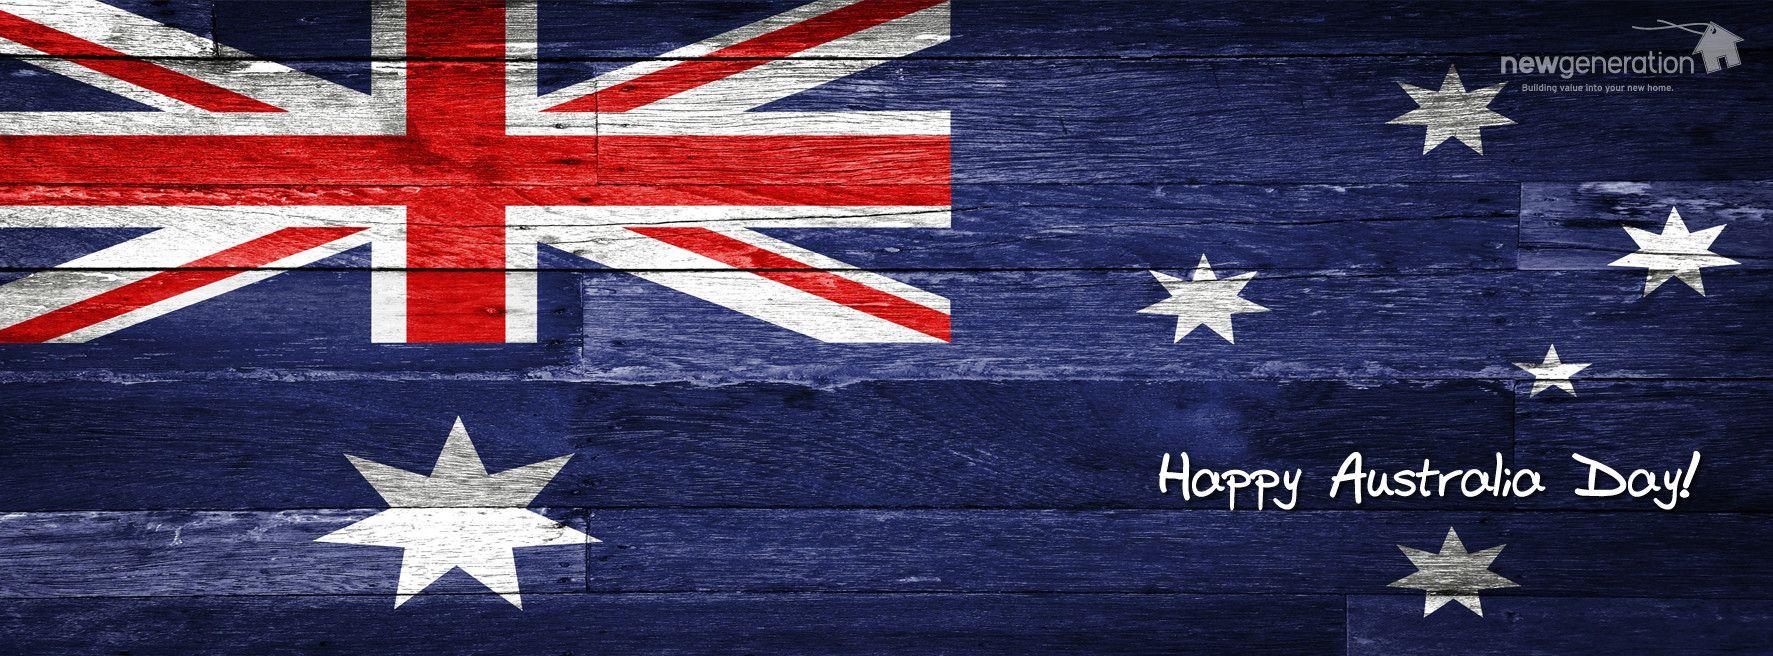 Australia Day Picture, Image, Photo